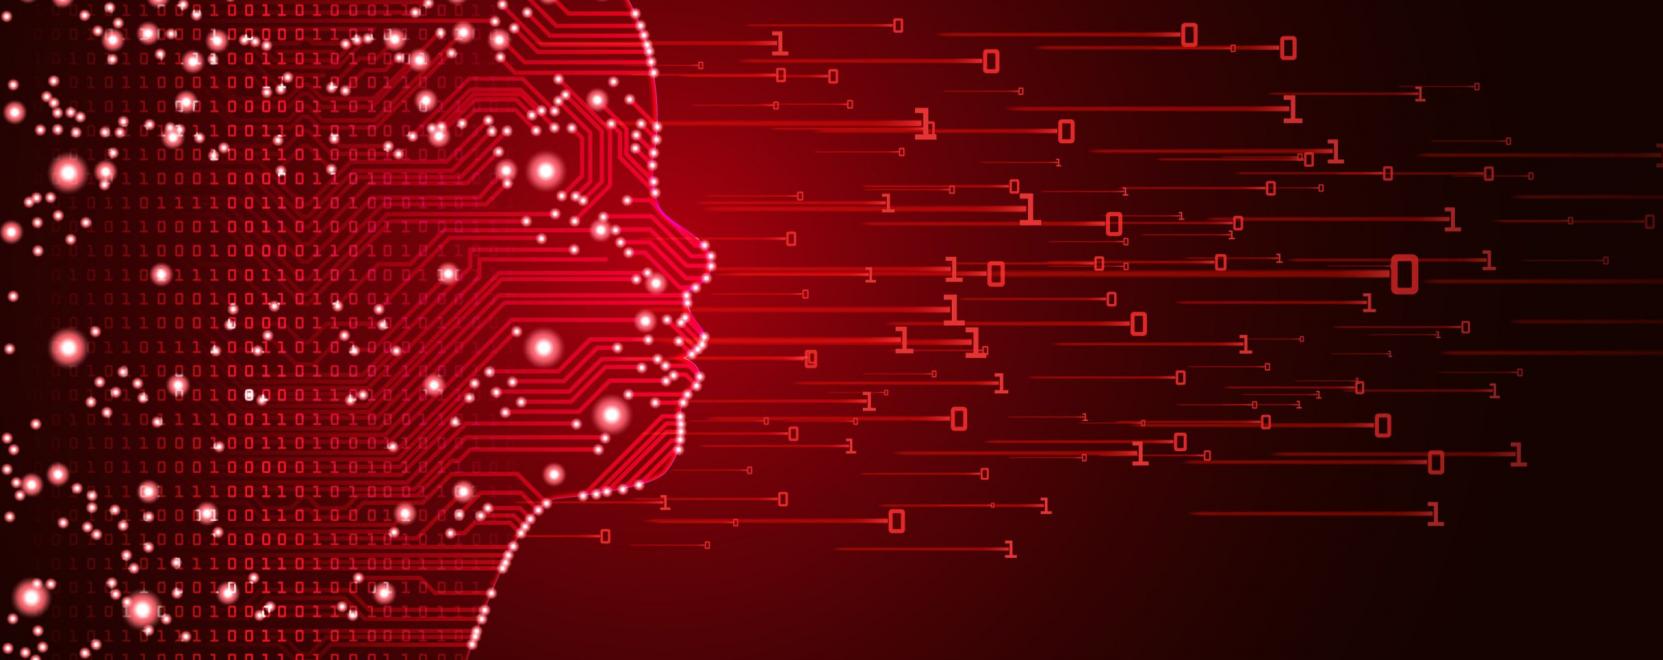 Emberi agy segítségével fejlesztették a gépi tanulást